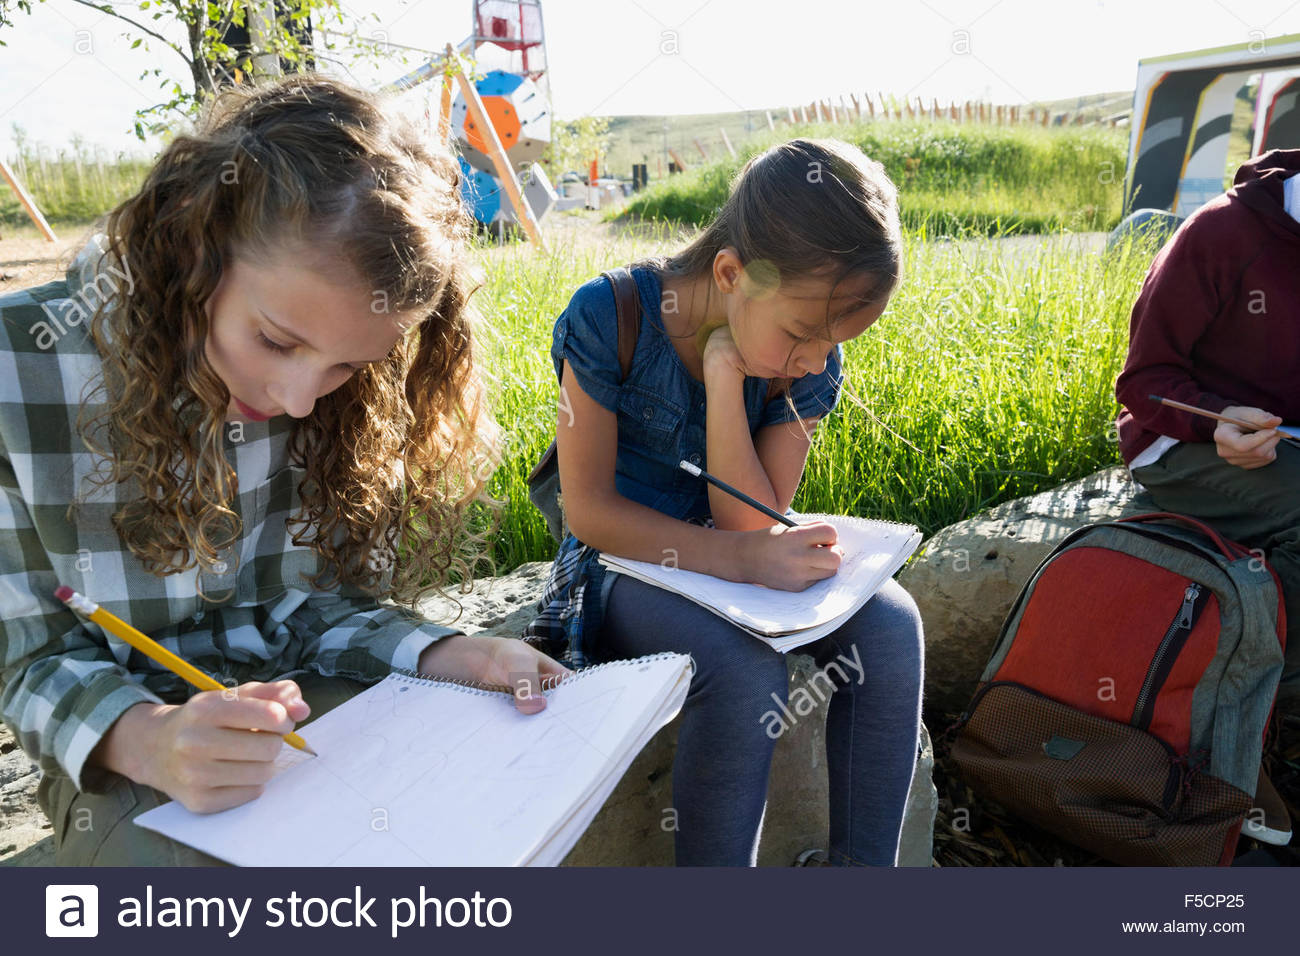 Les élèves font leurs devoirs à l'aire ensoleillée Banque D'Images